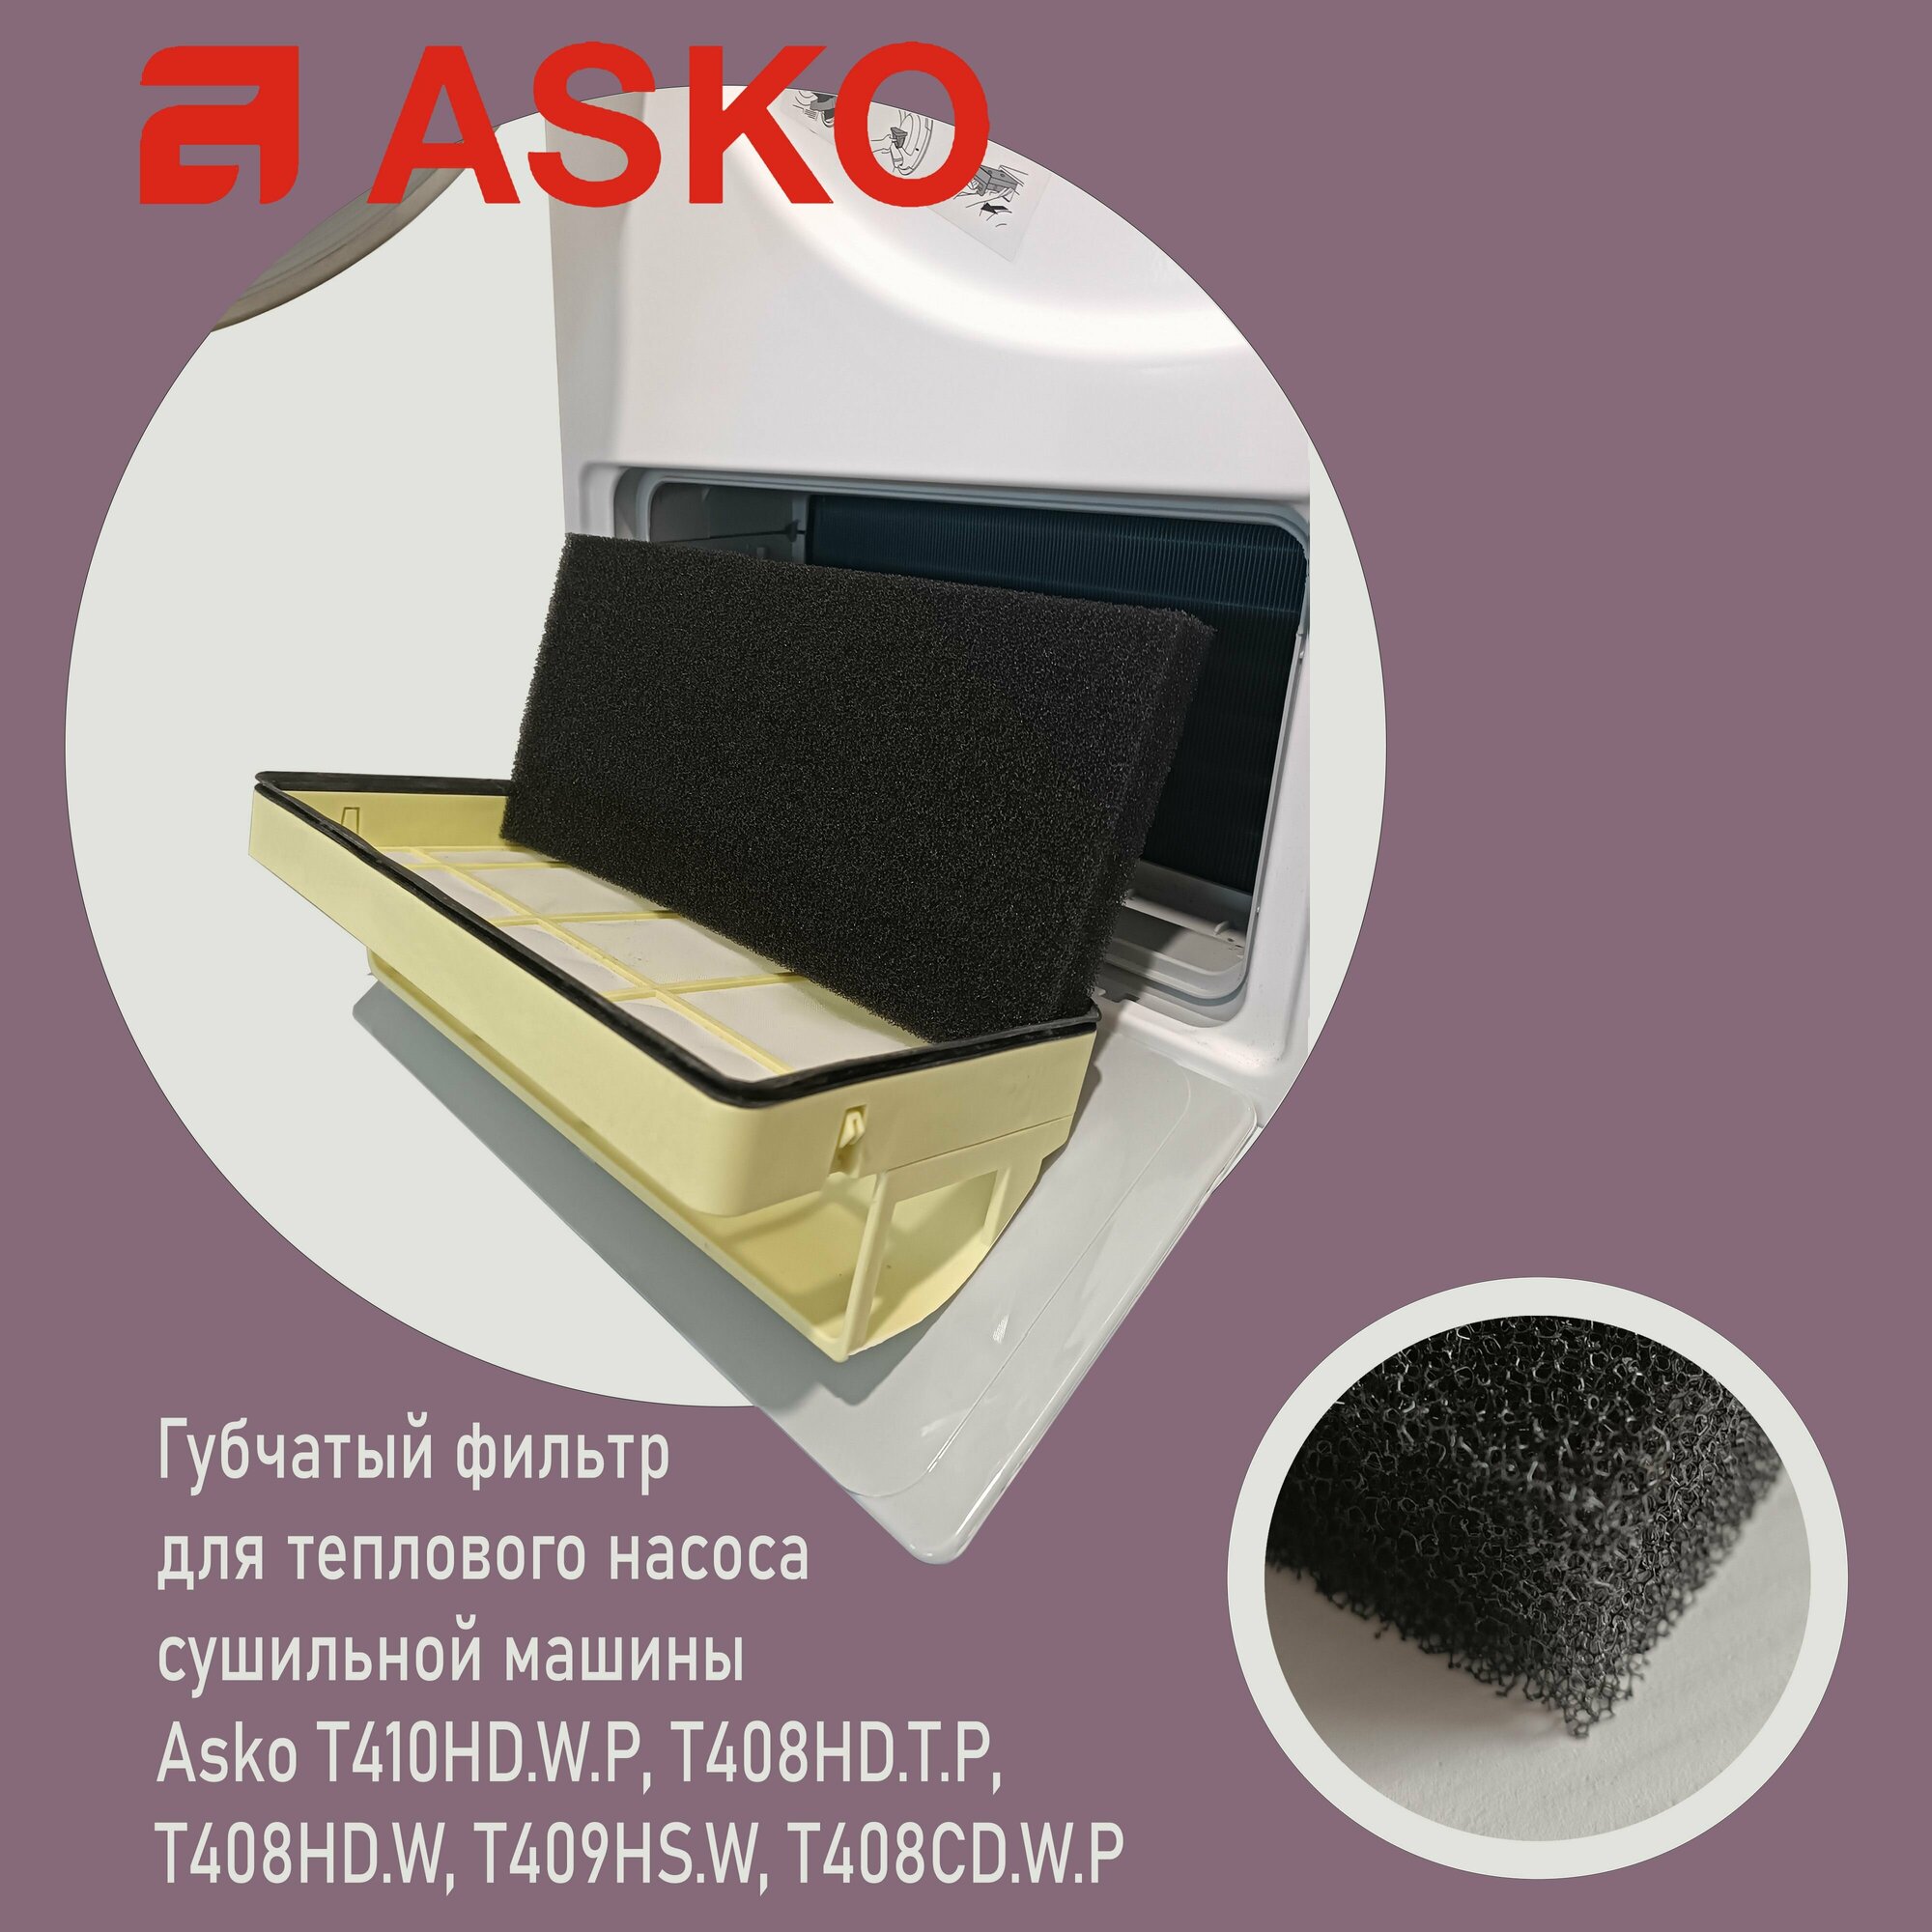 Фильтр для сушильных машин ASKO T408HD. W T409HS. W